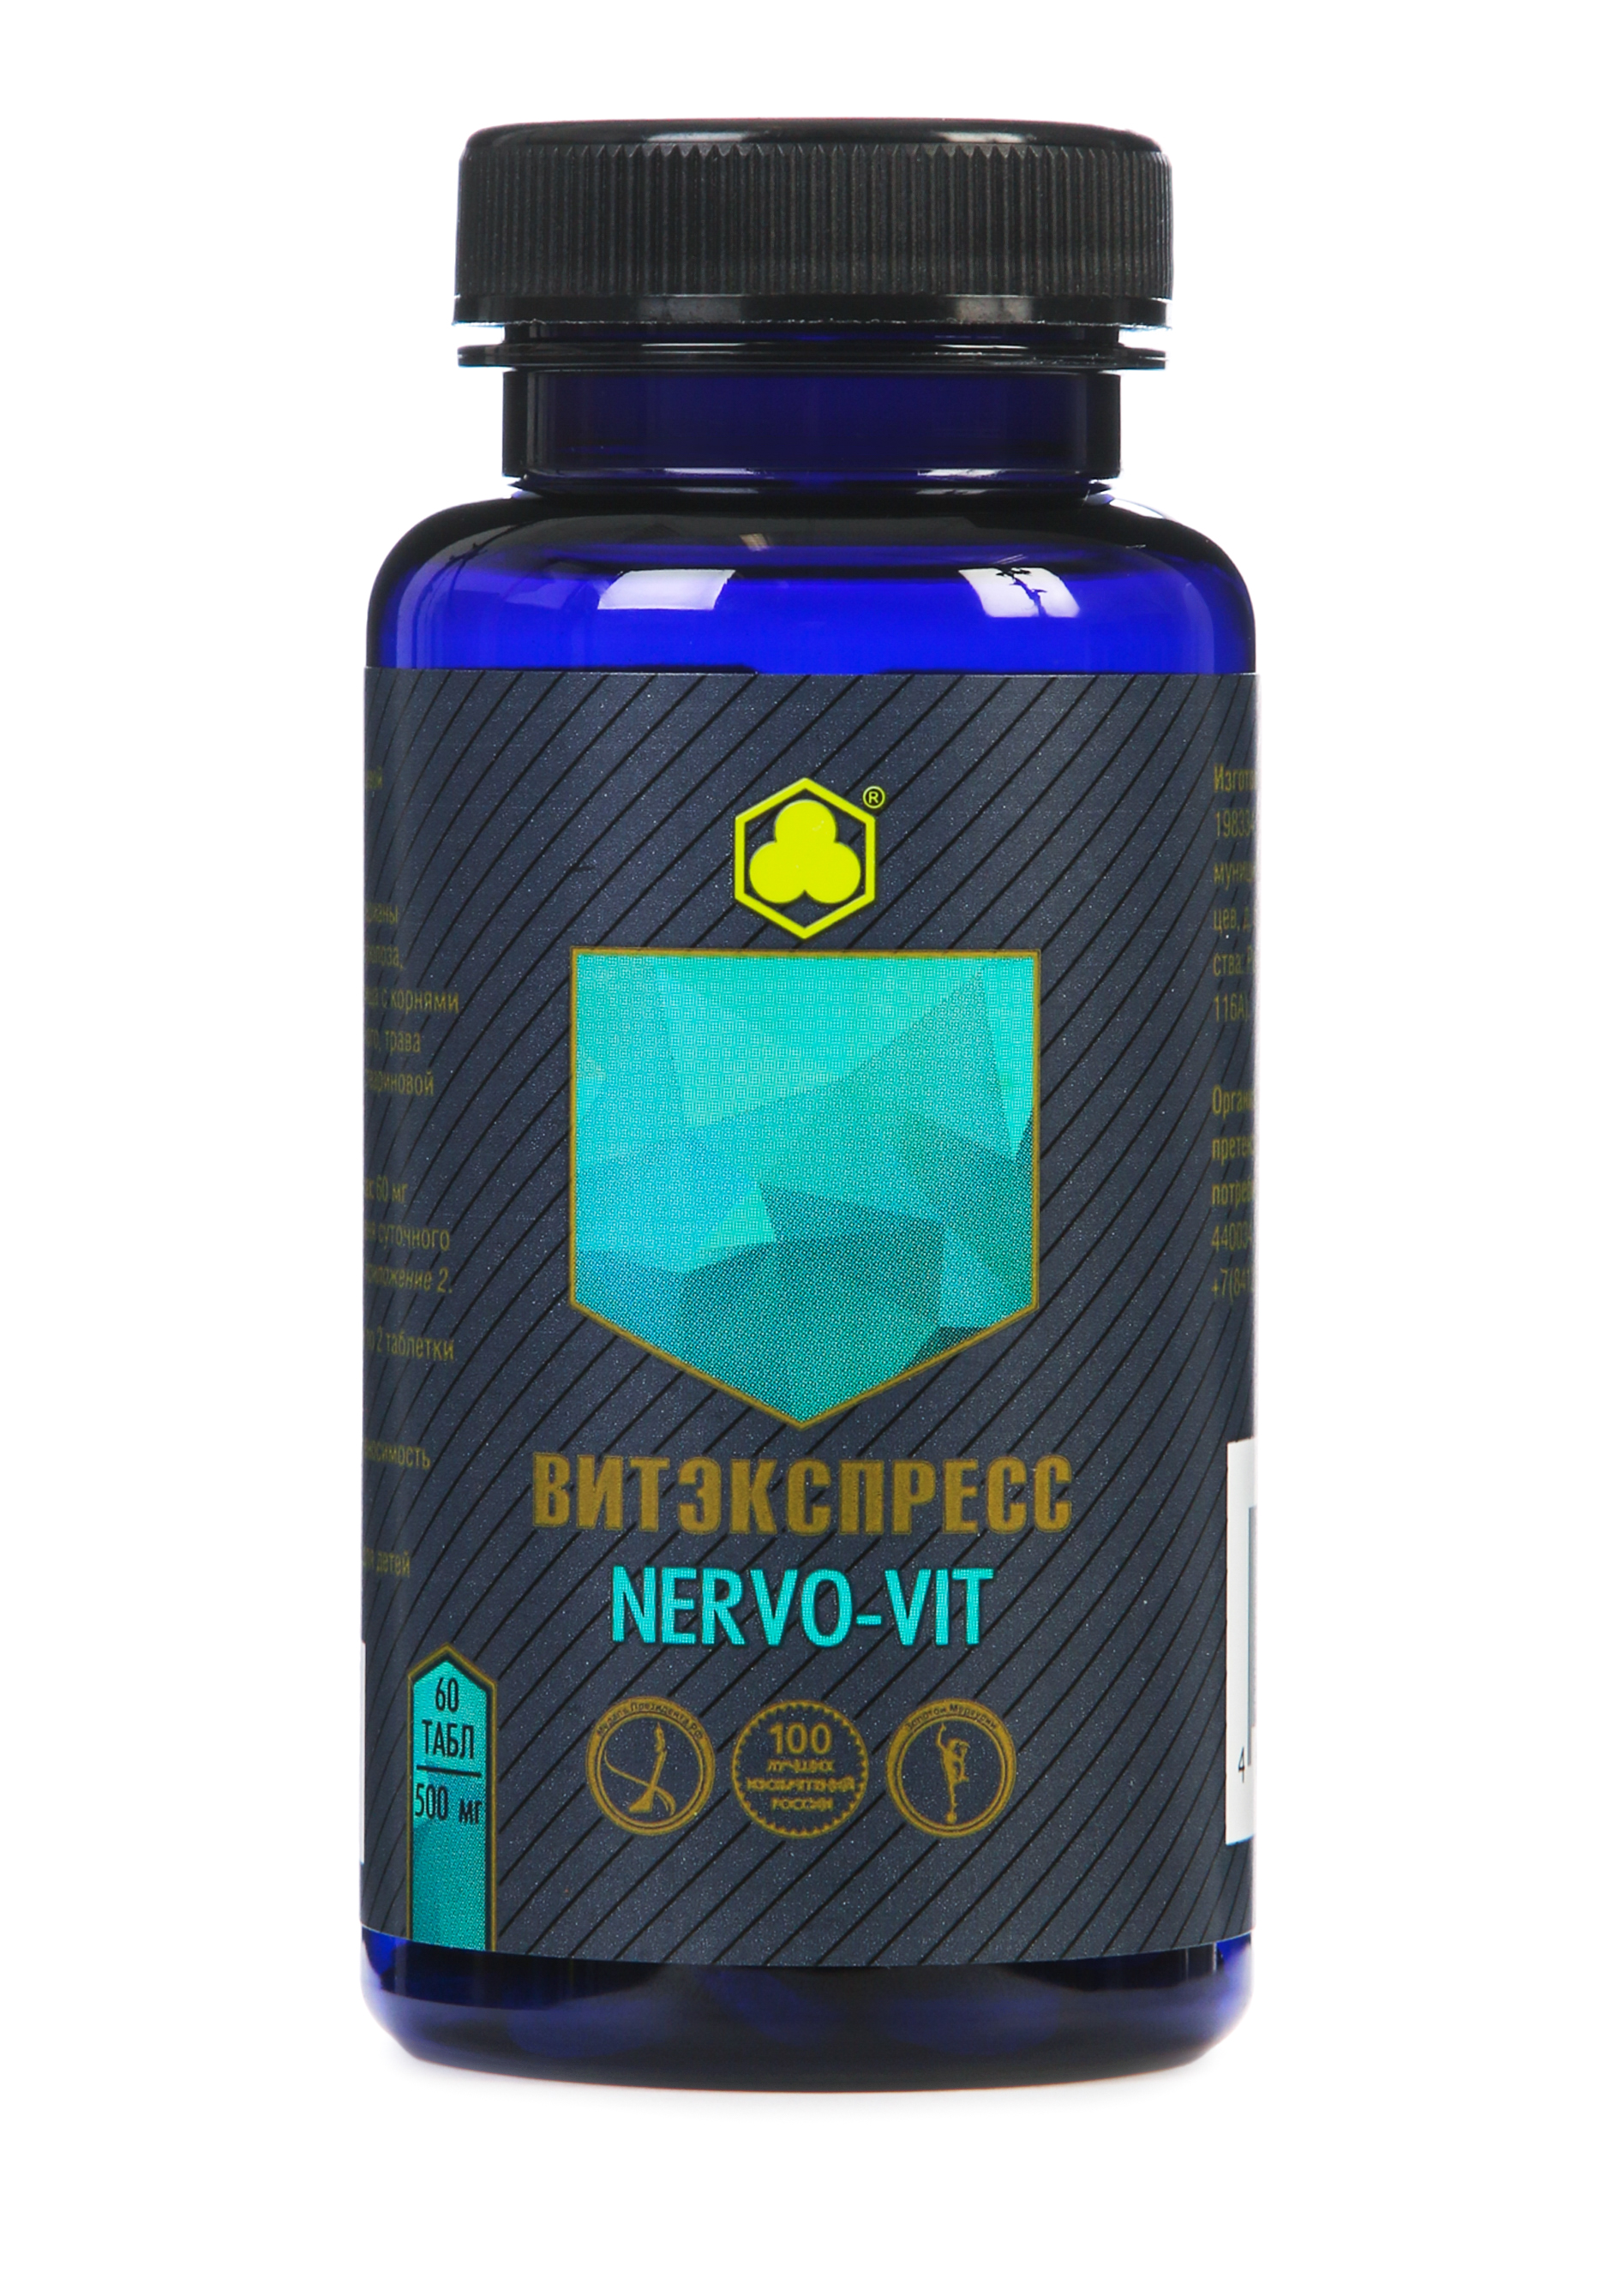 Органик-комплекс Nervo-vit витаминный комплекс